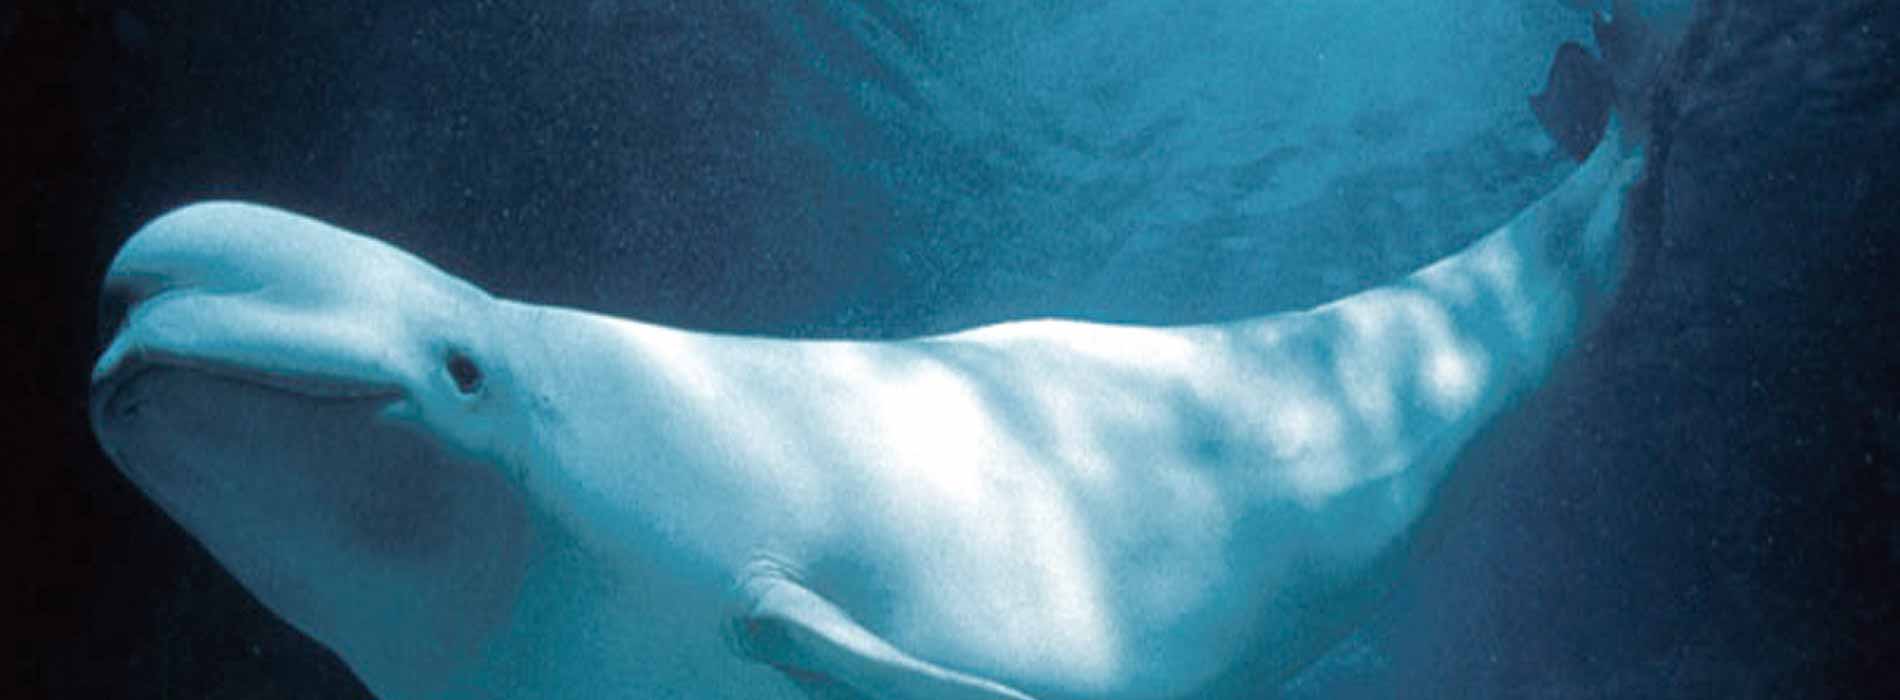 Beluga whale face profile